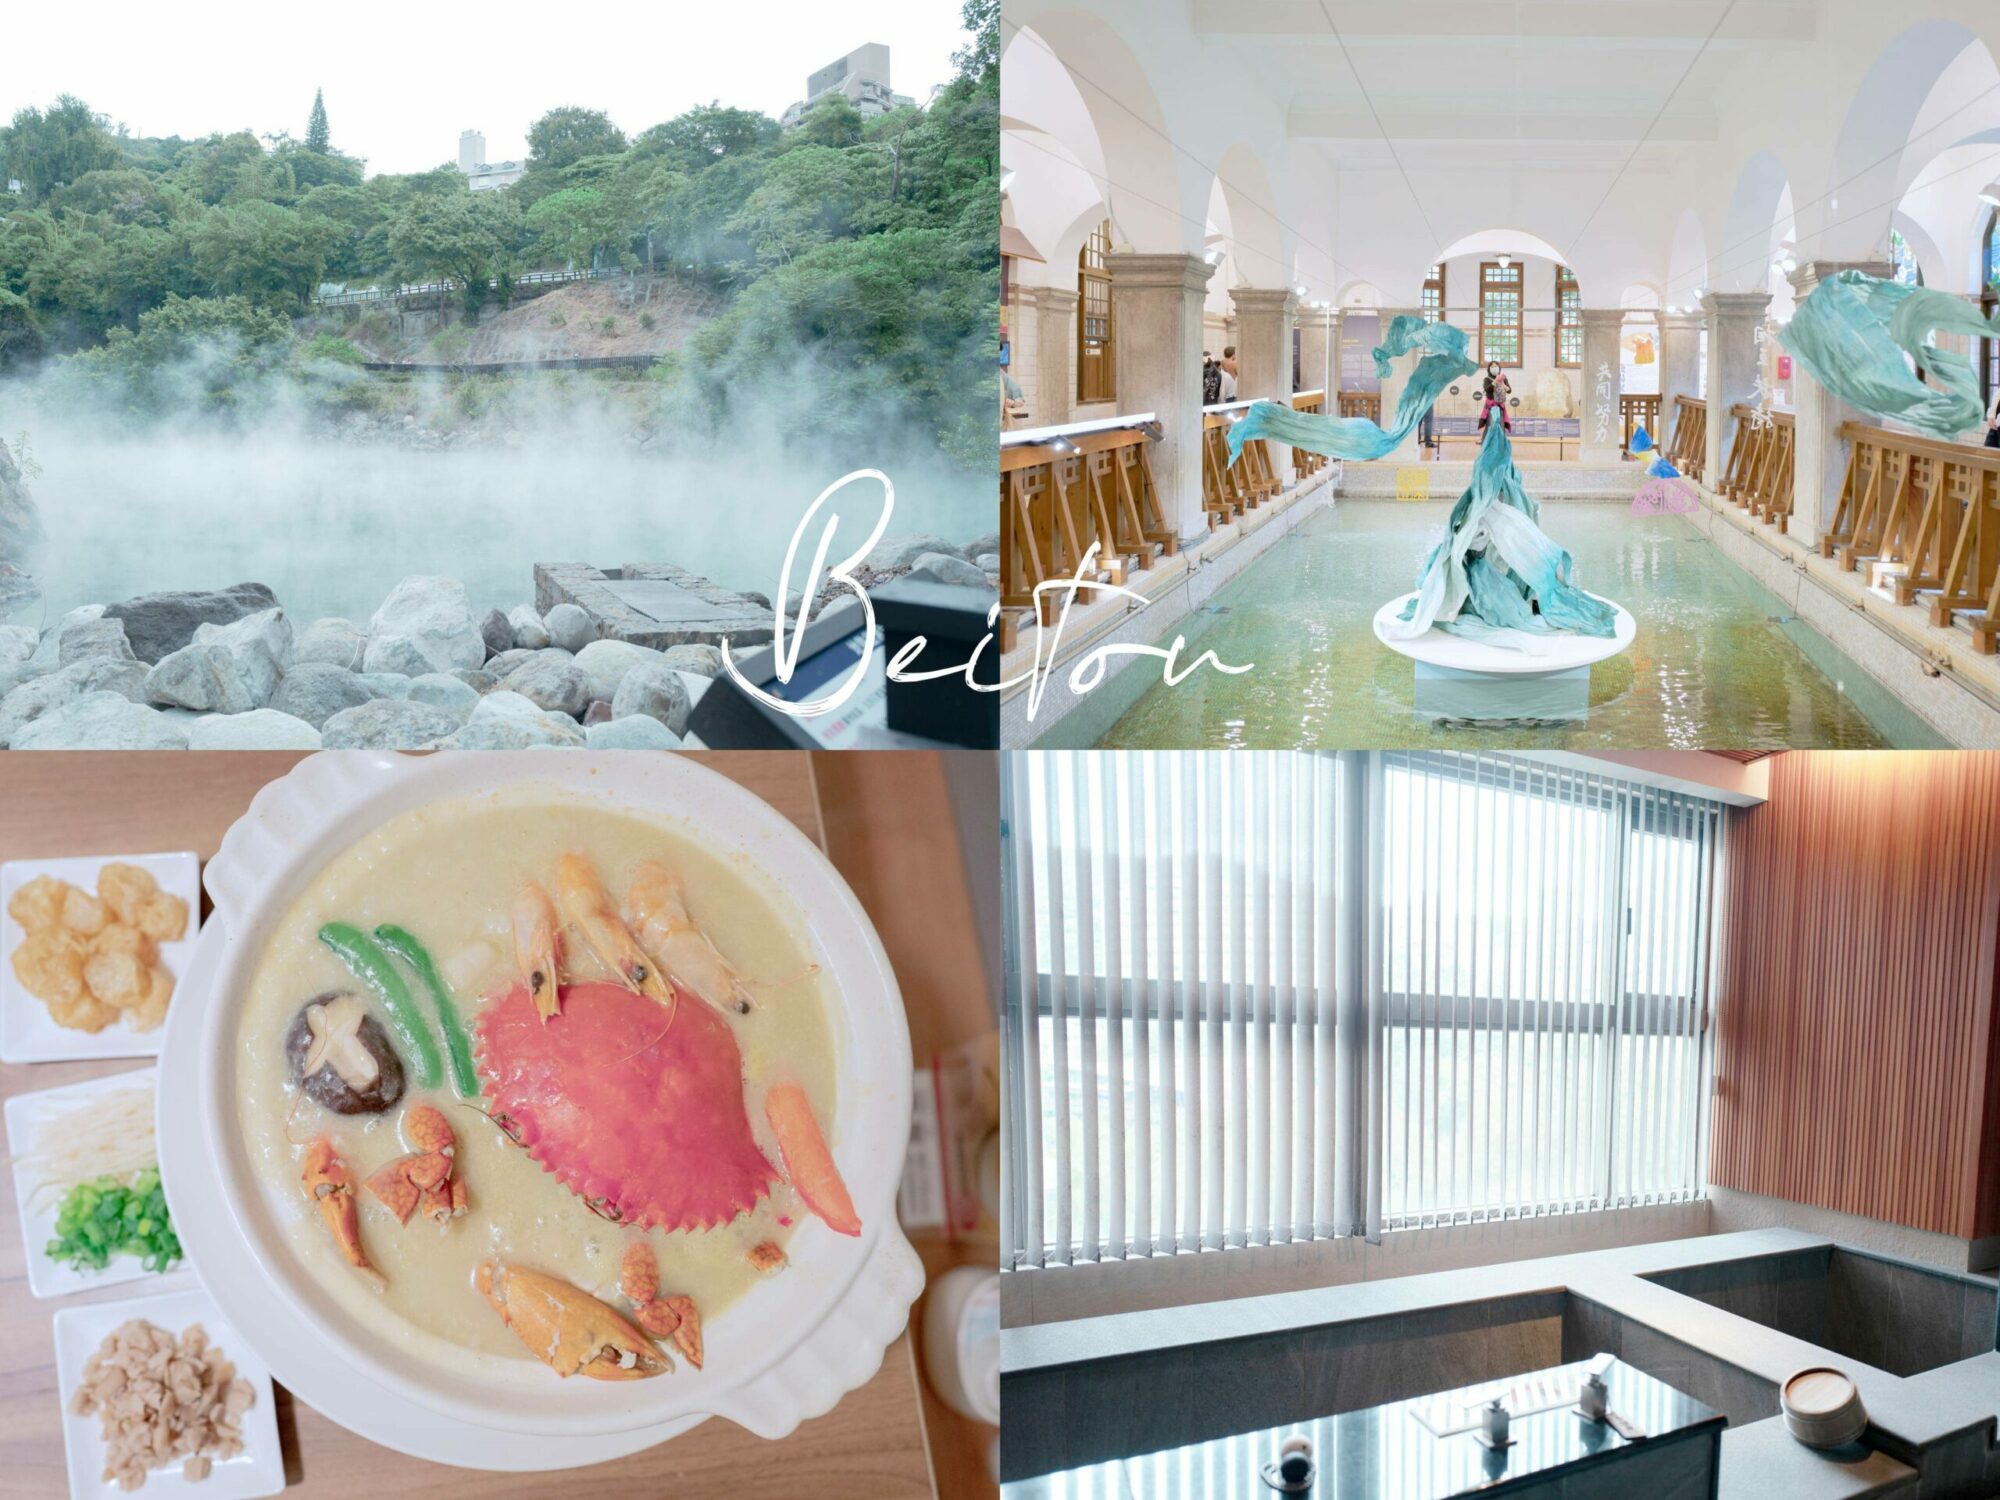 古法糯米雞,台北餐廳,添好運,米其林餐廳,茶餐廳 @薇樂莉 - 旅行.生活.攝影